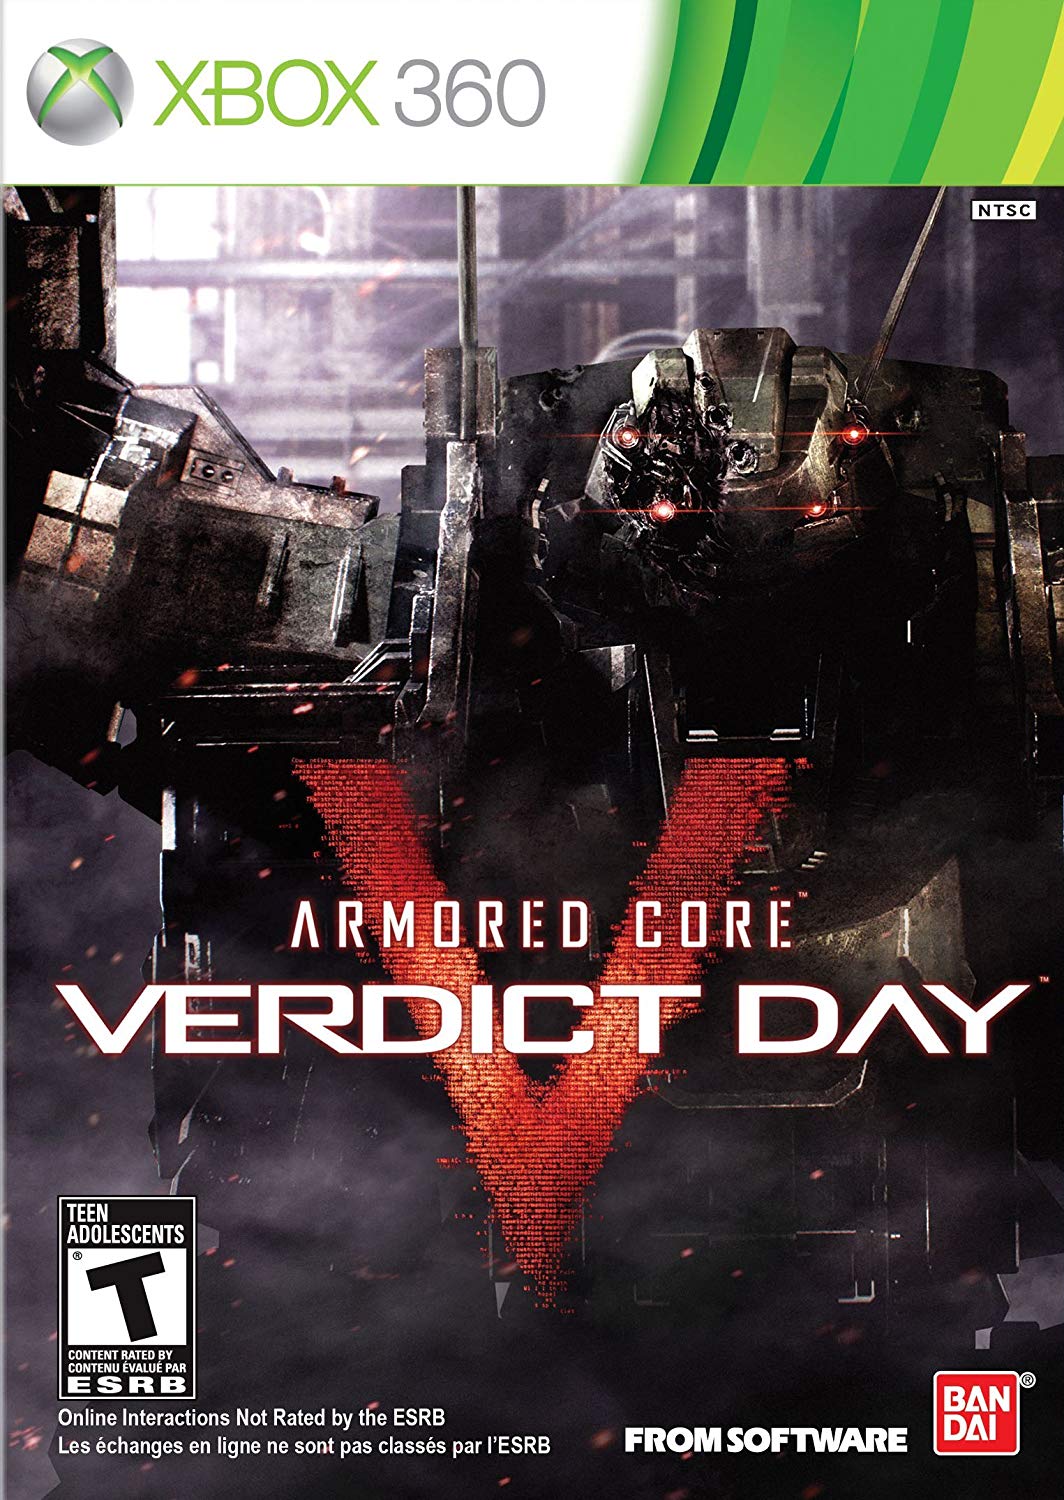 Armored Core V Verdict Day